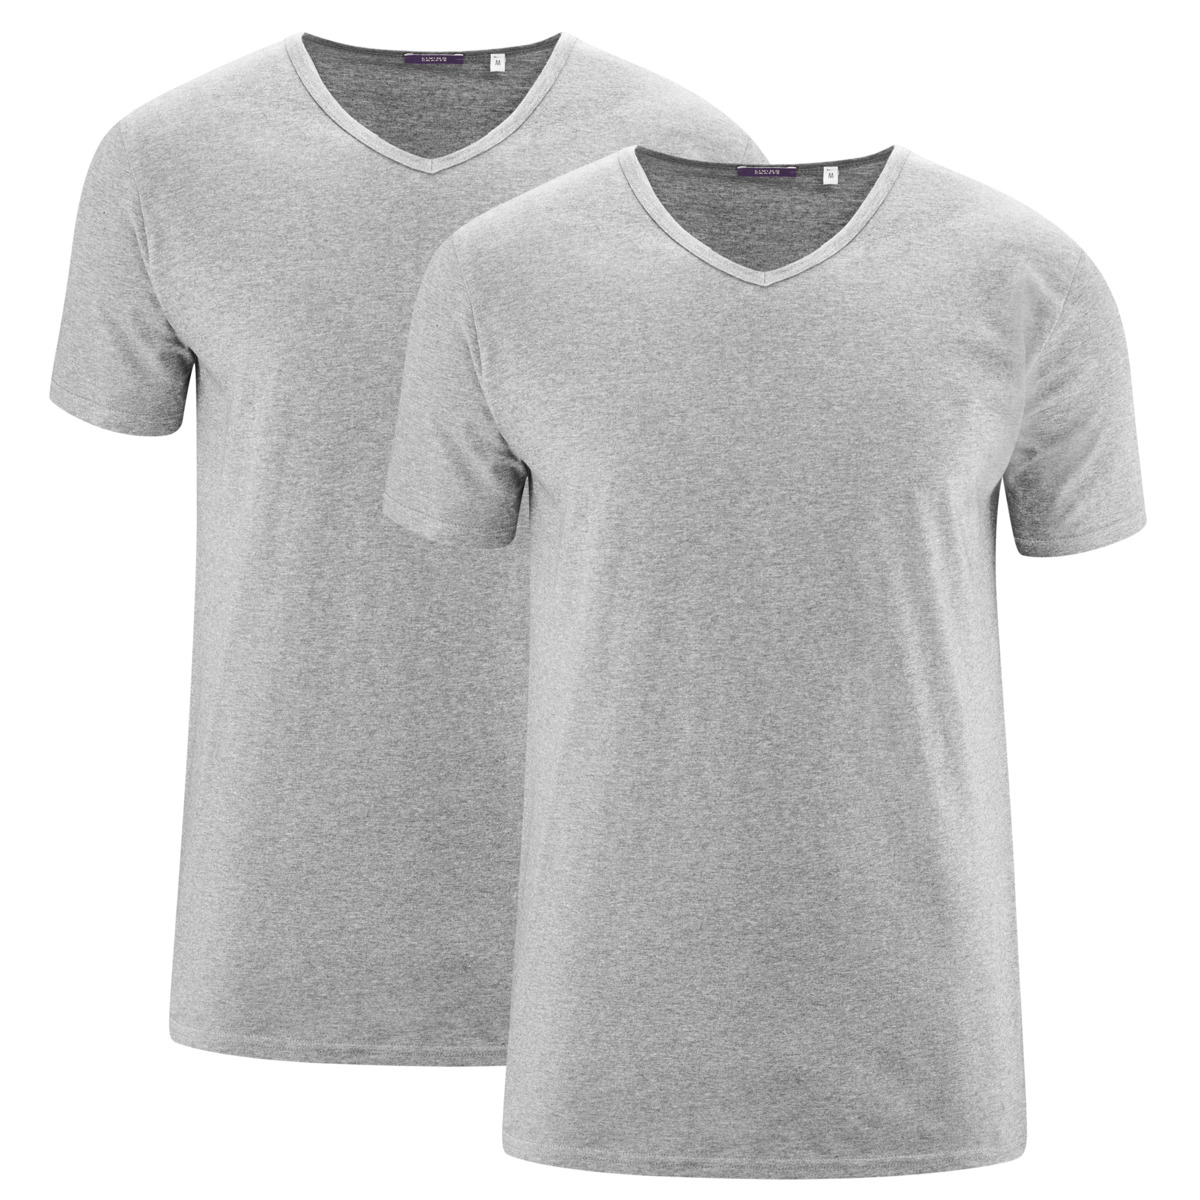 Grau T-Shirt, 2er-Pack, DEAN